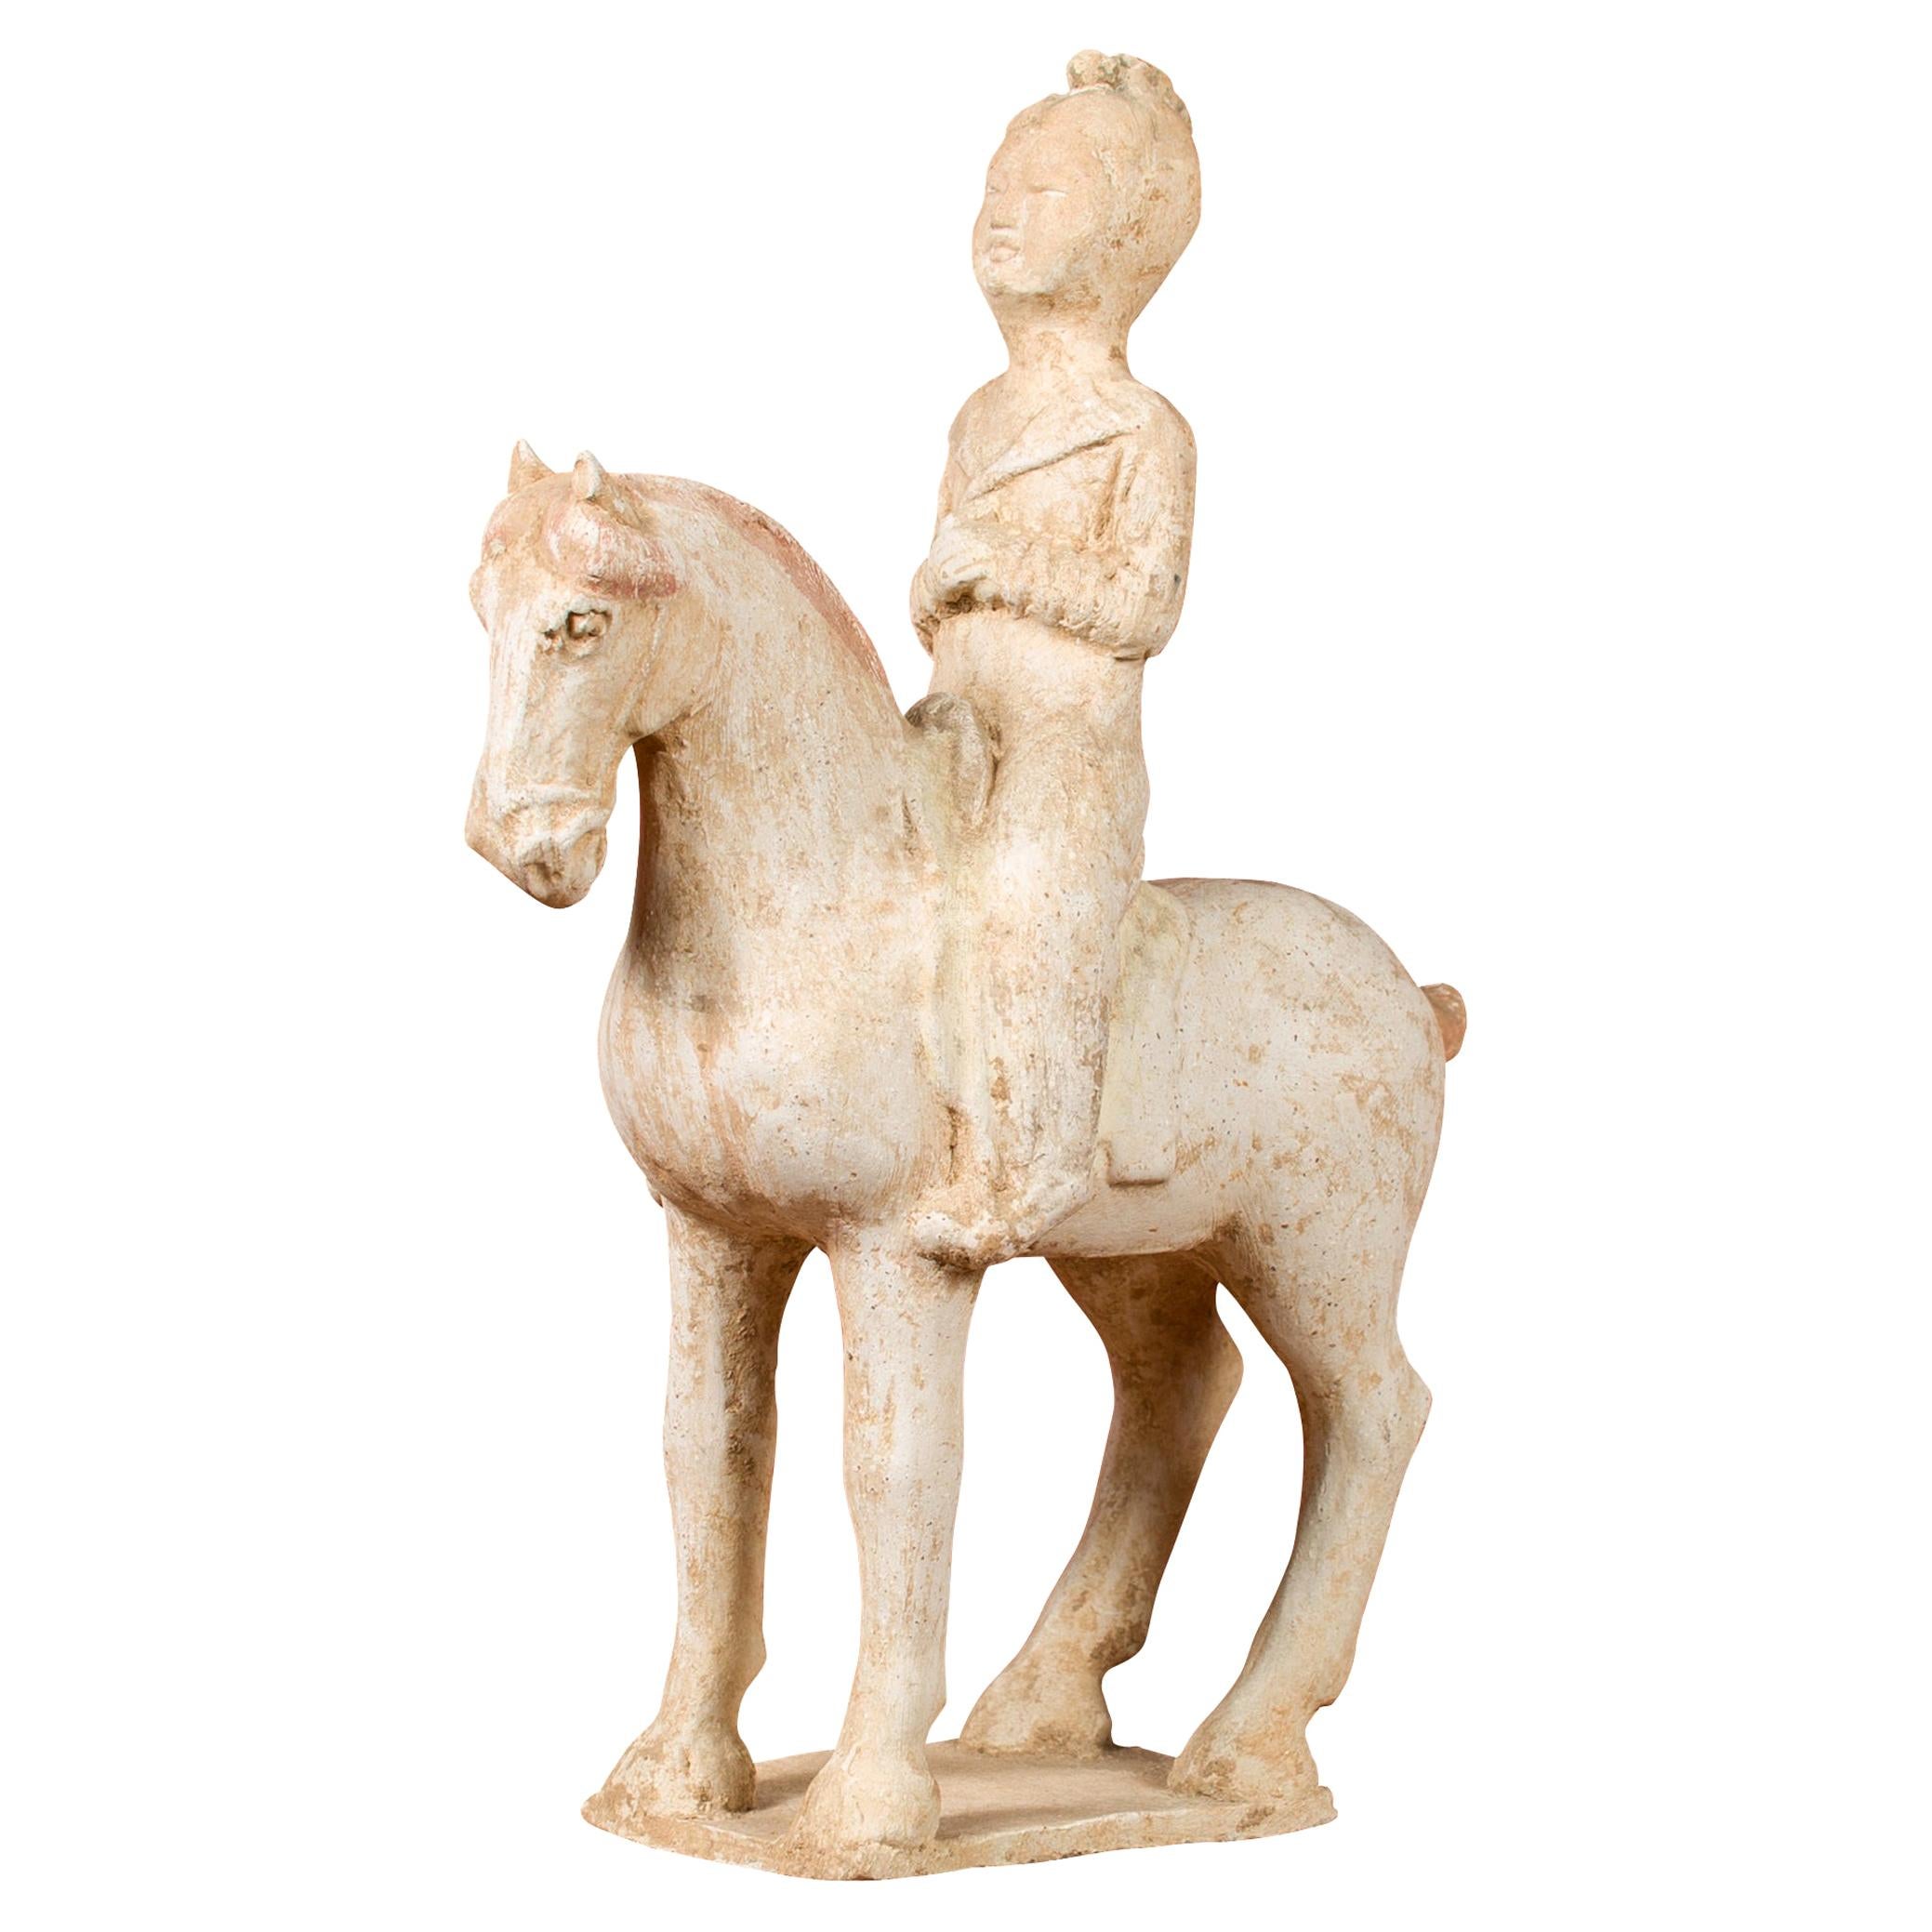 Statuette en terre cuite peinte de la dynastie chinoise Han représentant un cheval avec un cavalier